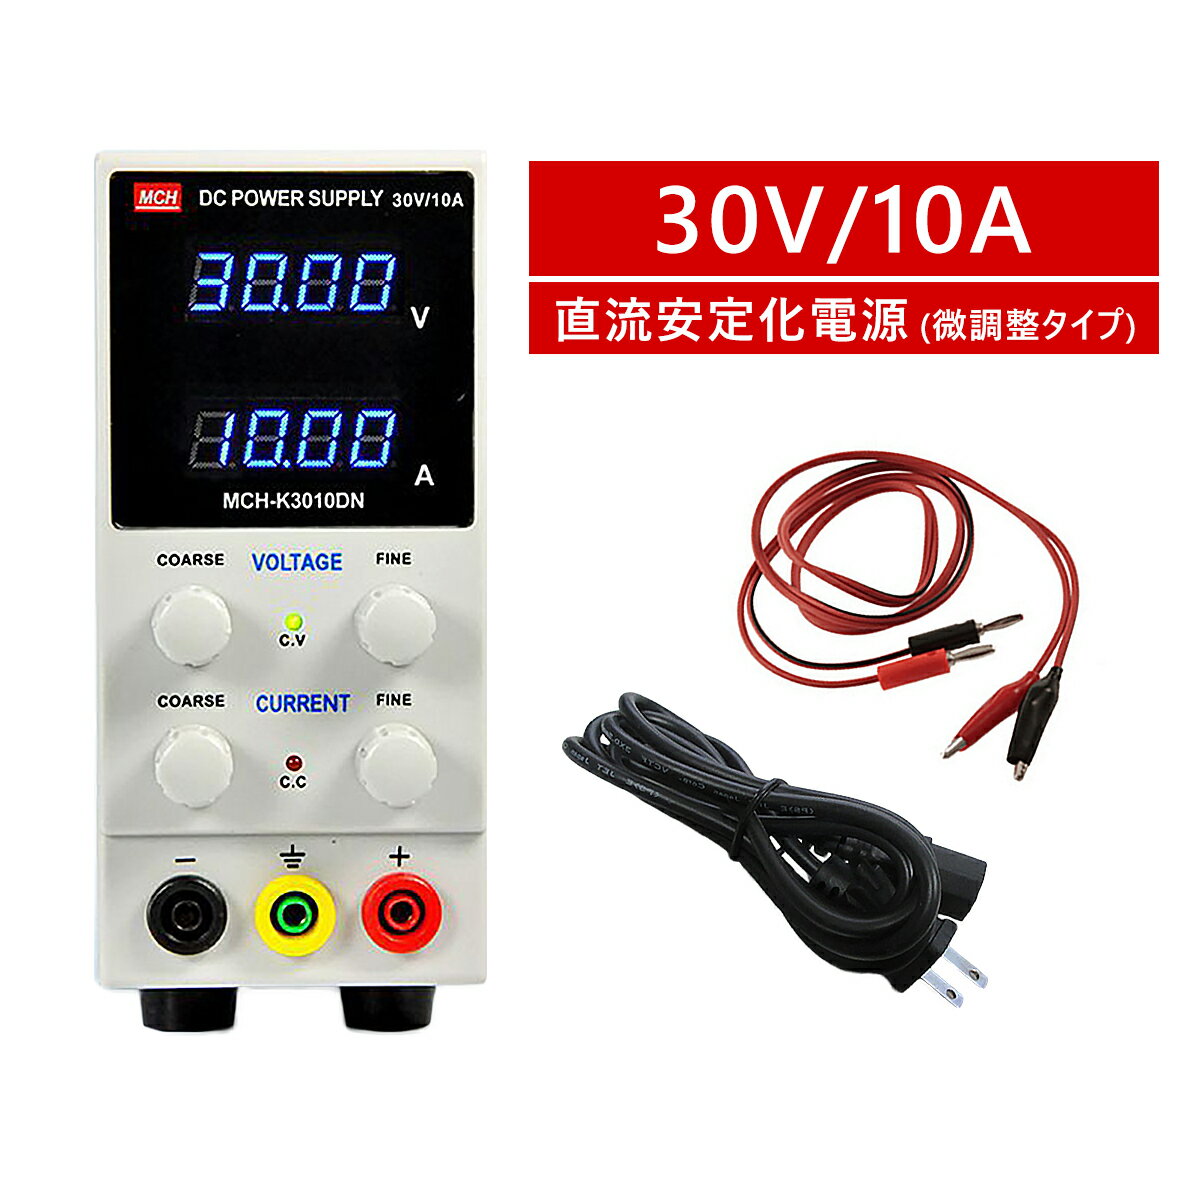 直流安定化電源 30V 10A 直流電源 10mV 1mA 微調整対応モデル スイッチング式 自動温度制御冷却ファン 直流電源装置 0-30V 0-10A PSE認証 6ヶ月保証 SDL